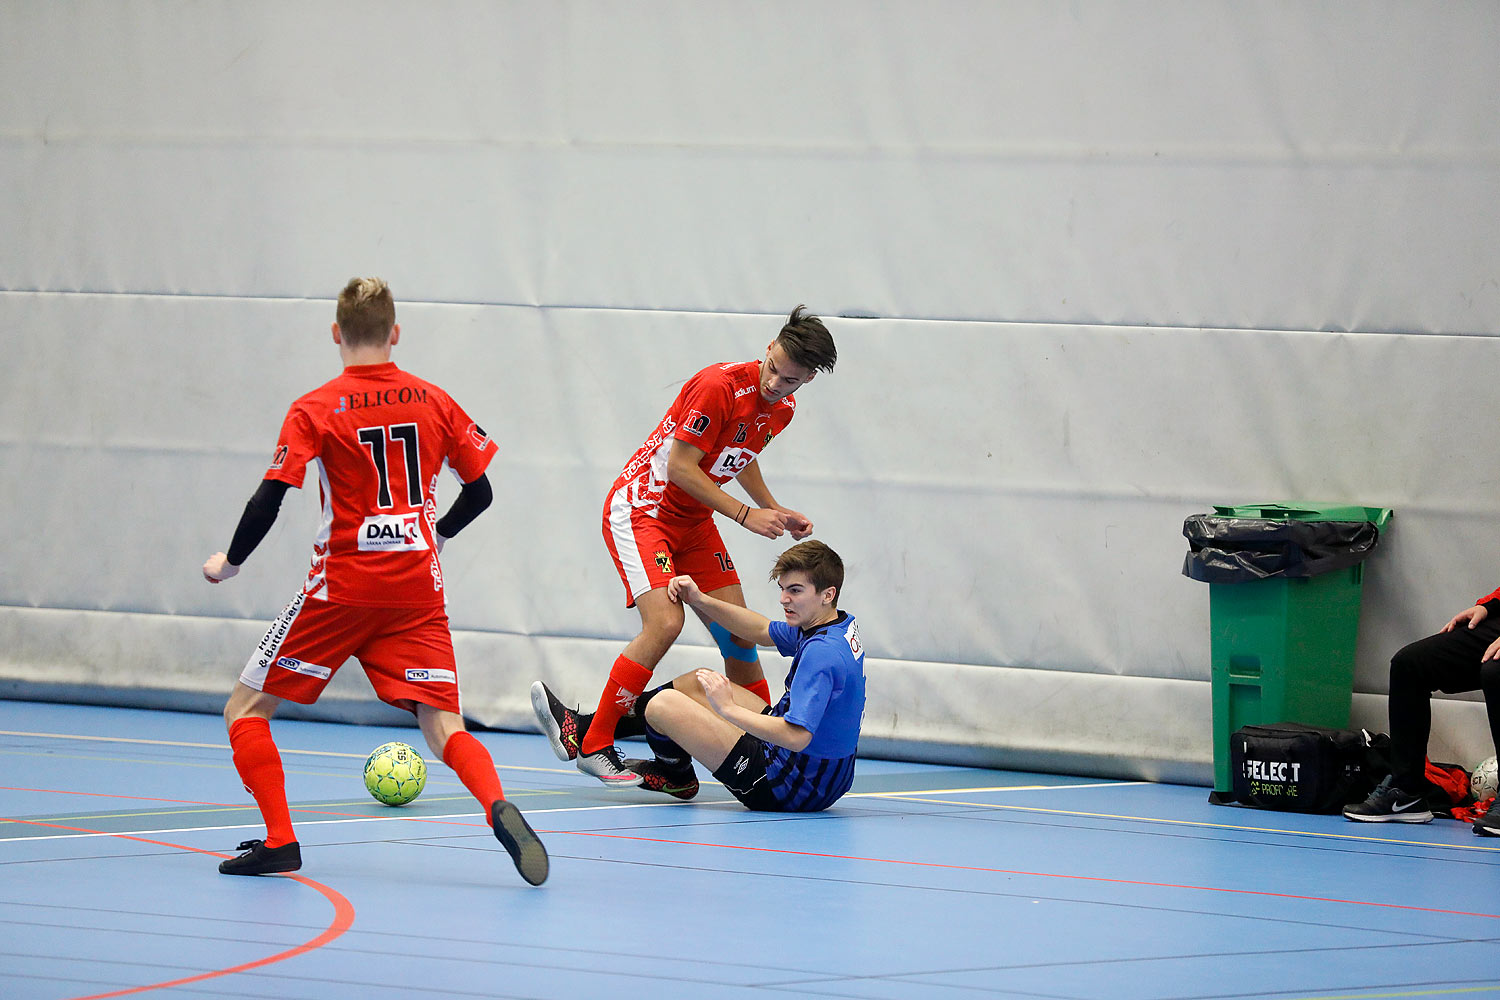 Skövde Futsalcup Herrjuniorer Ulricehamns IFK-Töreboda IK,herr,Arena Skövde,Skövde,Sverige,Skövde Futsalcup 2016,Futsal,2016,141947